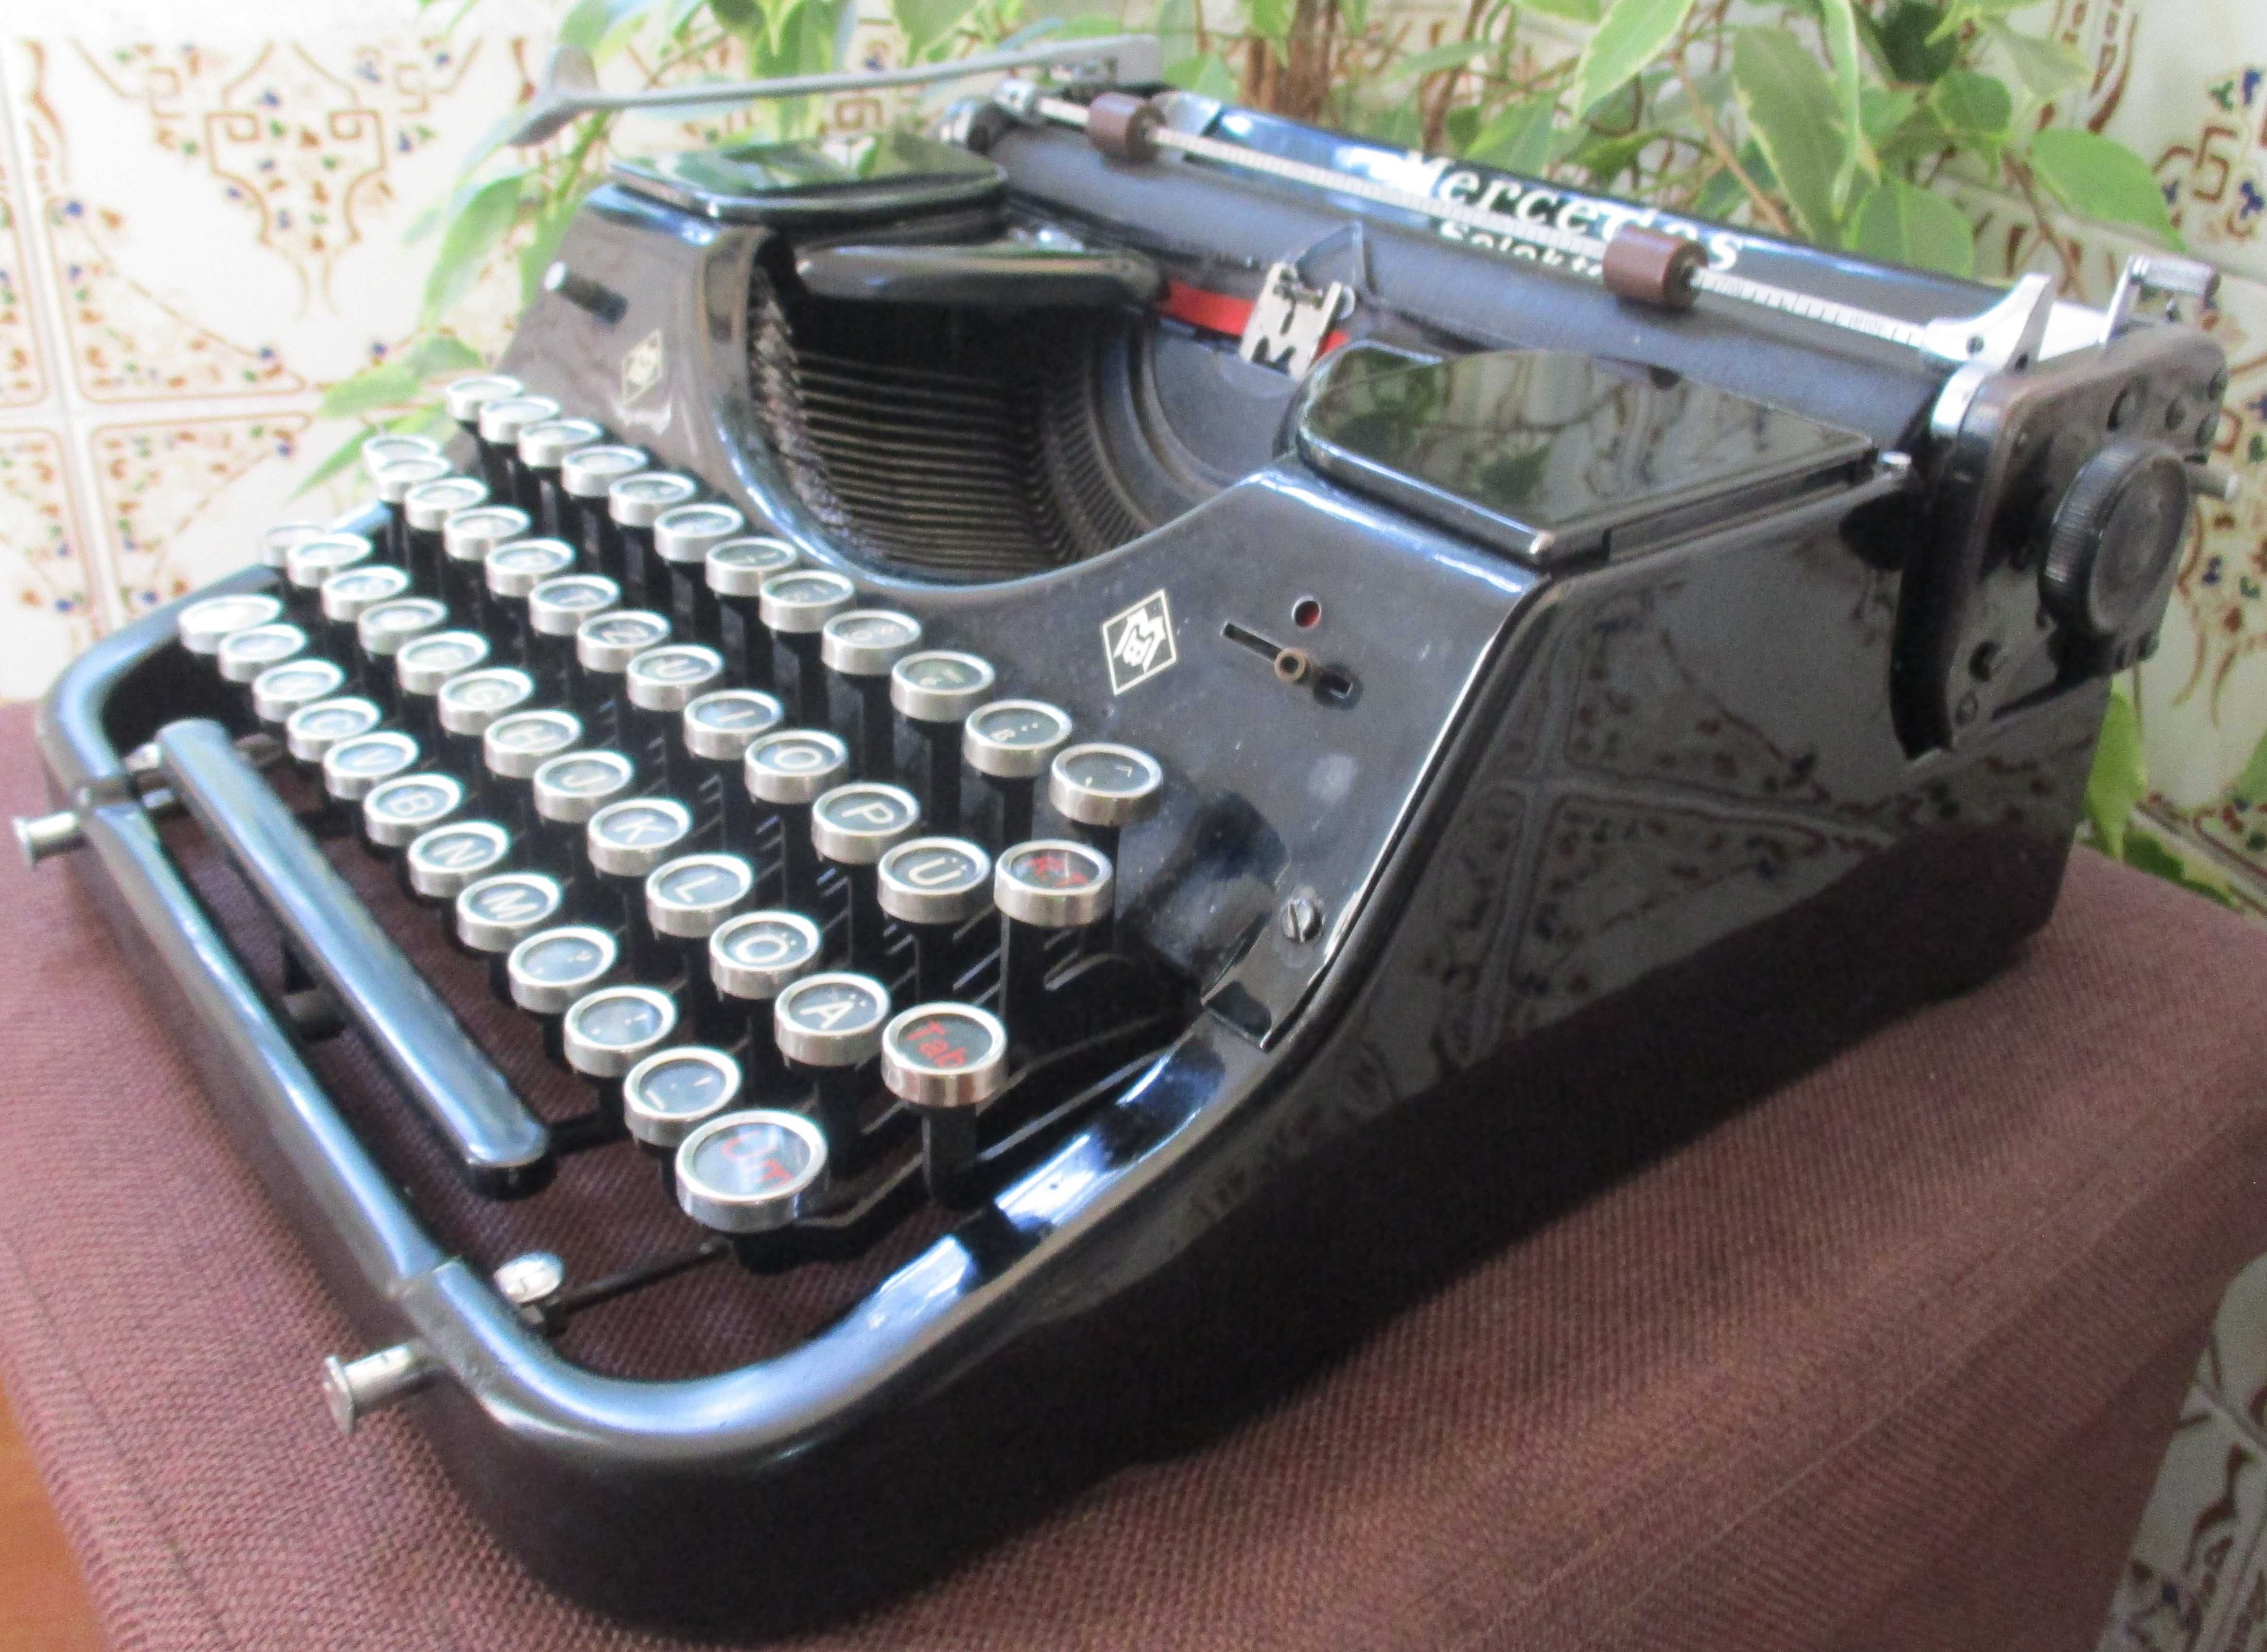 Maquina de escrever - Modelo Mercedes com 100 anos